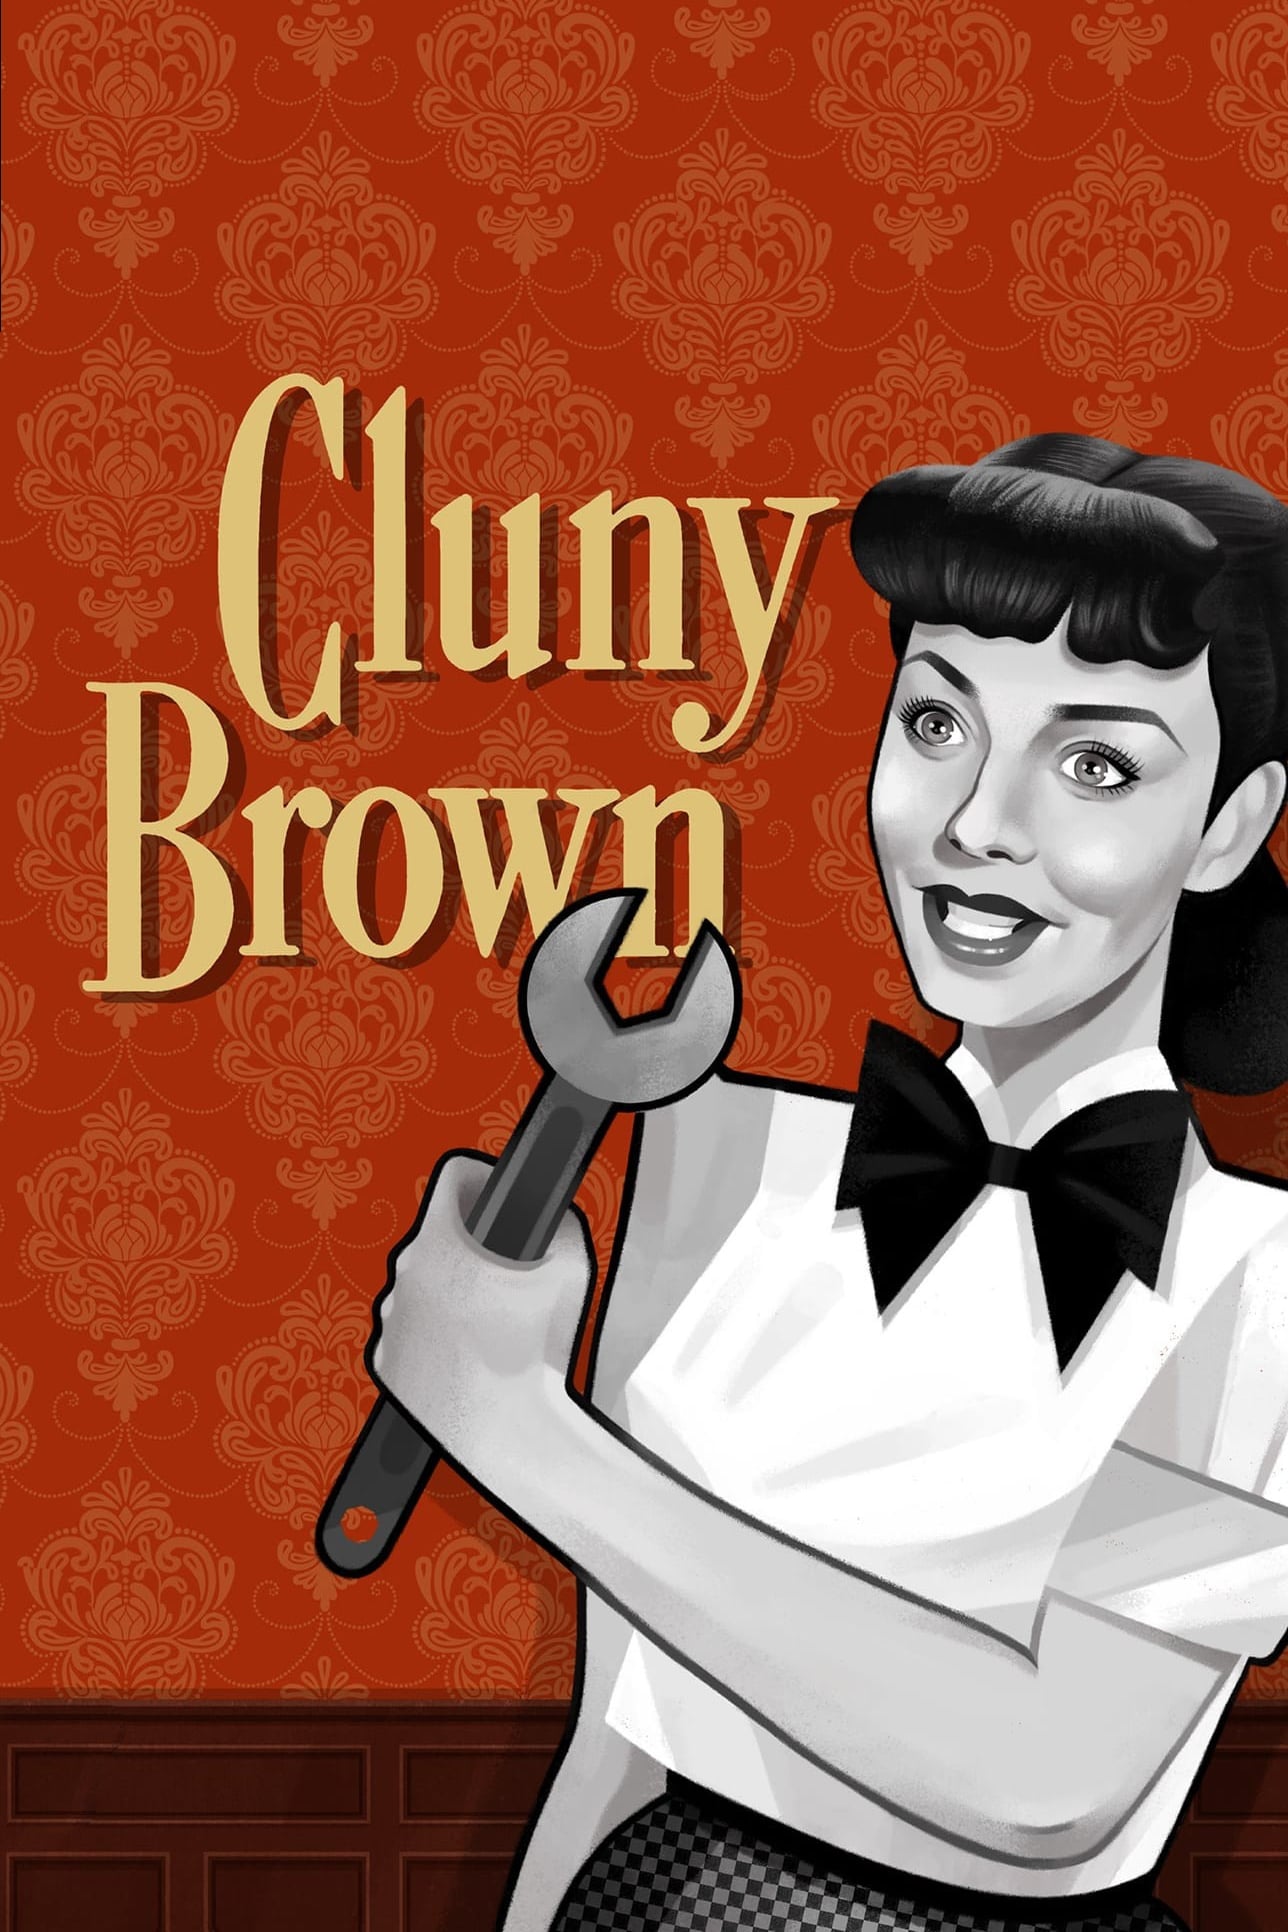 El pecado de Cluny Brown (1946)